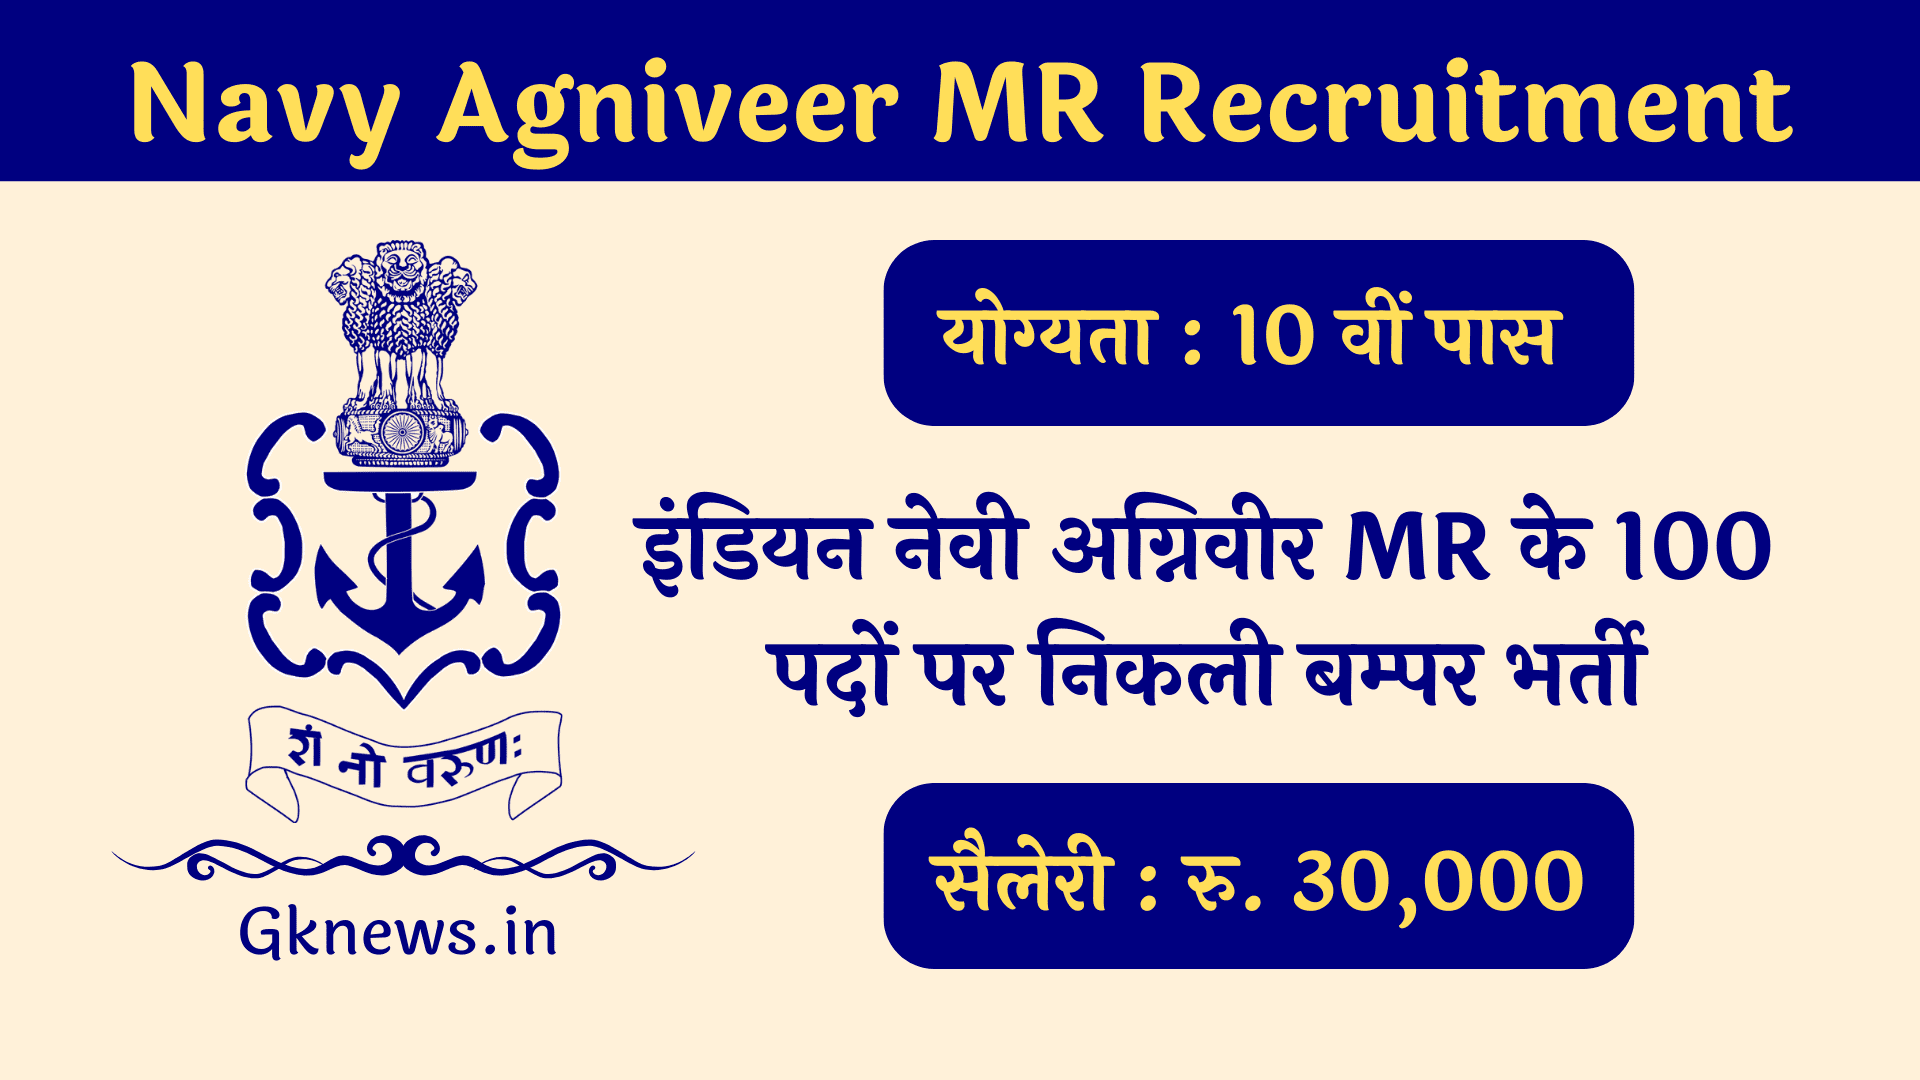 Navy Agniveer MR Recruitment 2022